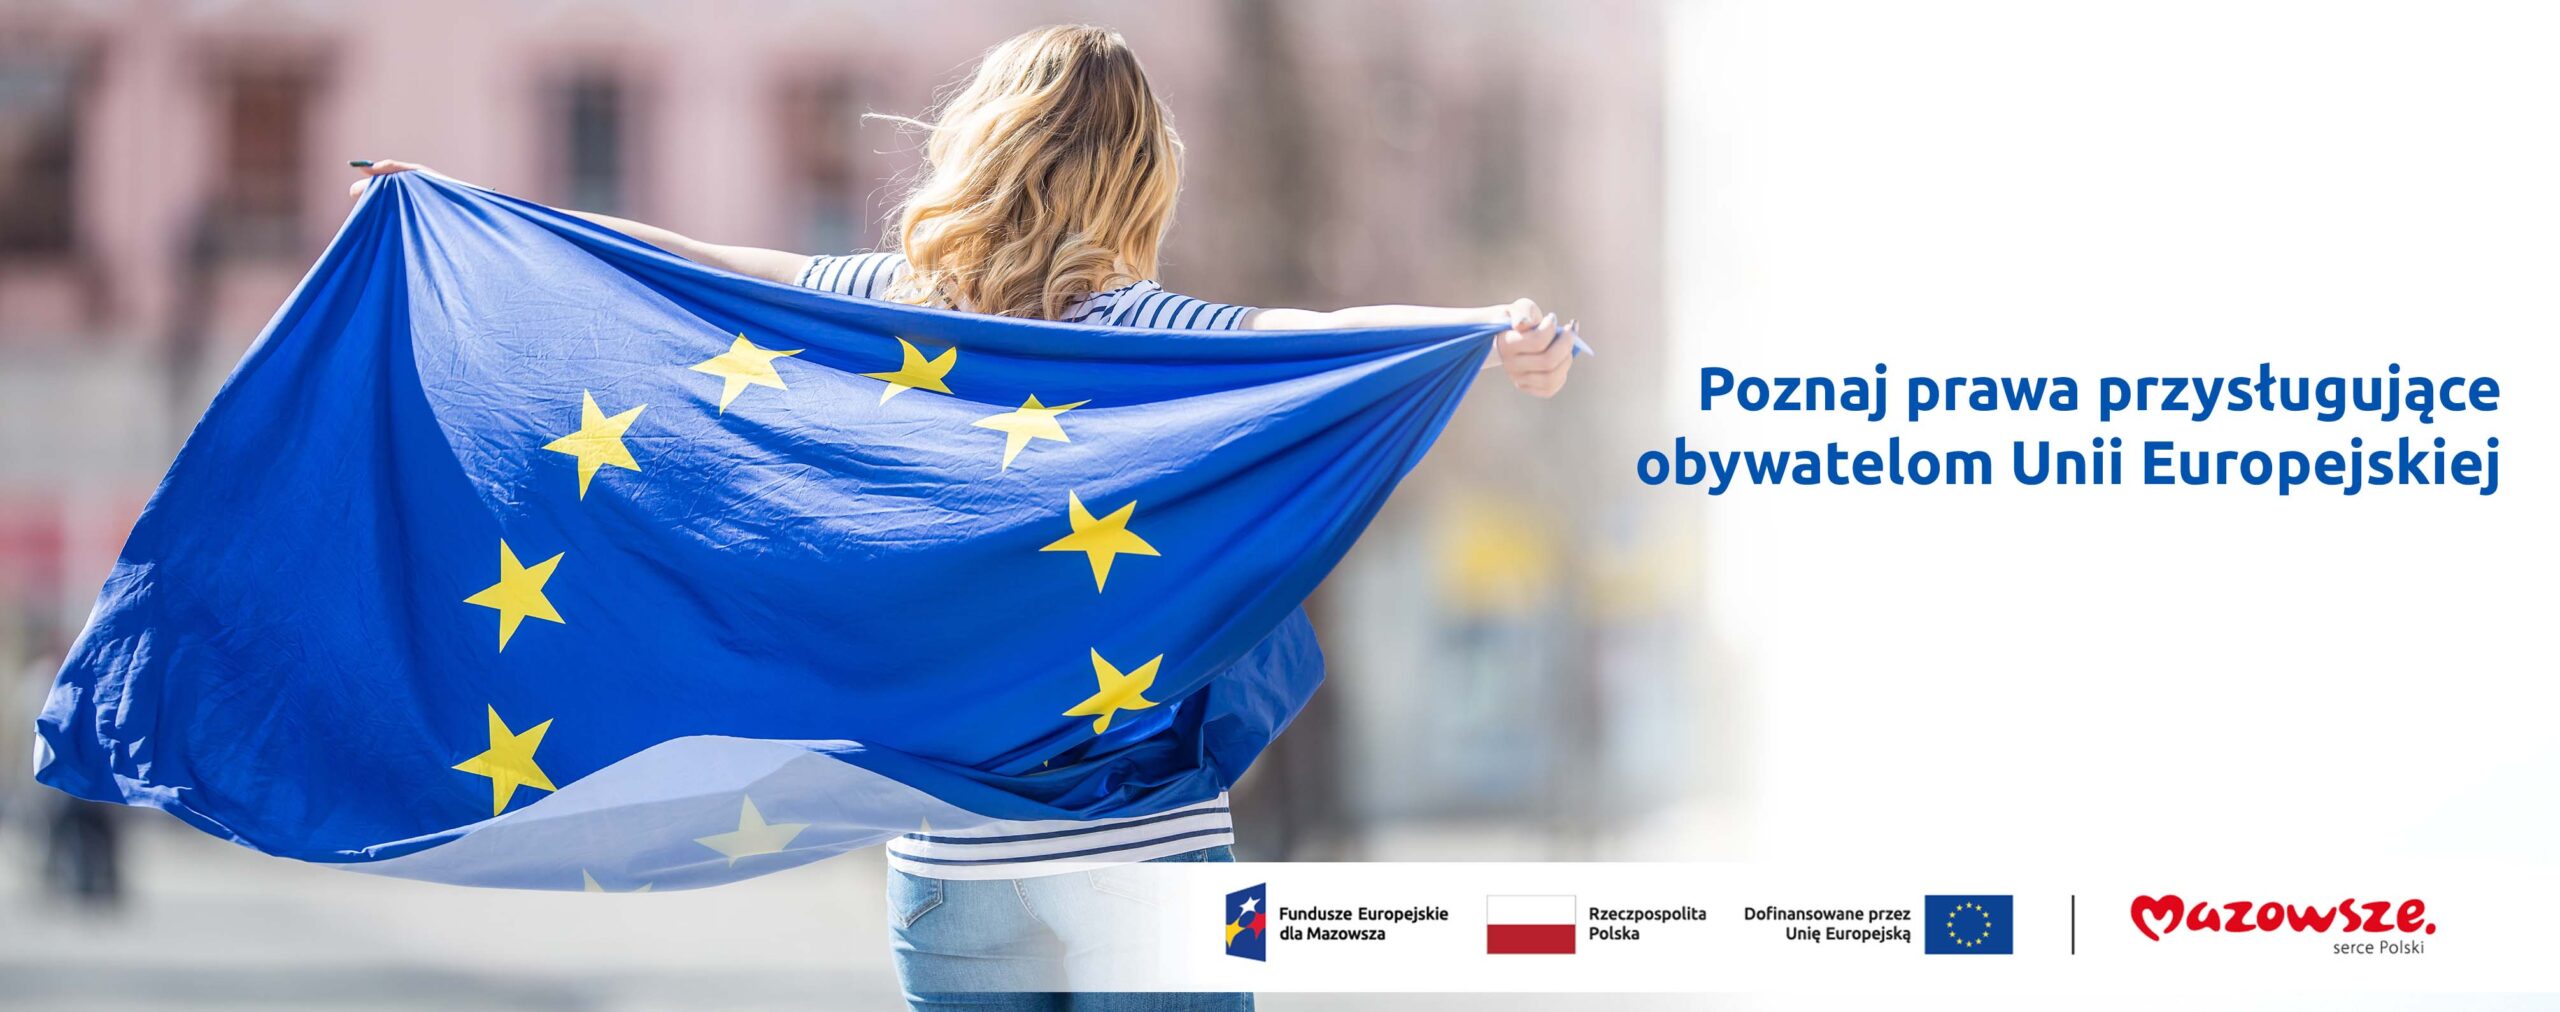 Na grafice znajduje się hasło: Poznaj prawa przysługujące obywatelom Unii Europejskiej. Obok zdjęcie kobiety trzymającej flagę Unii Europejskiej